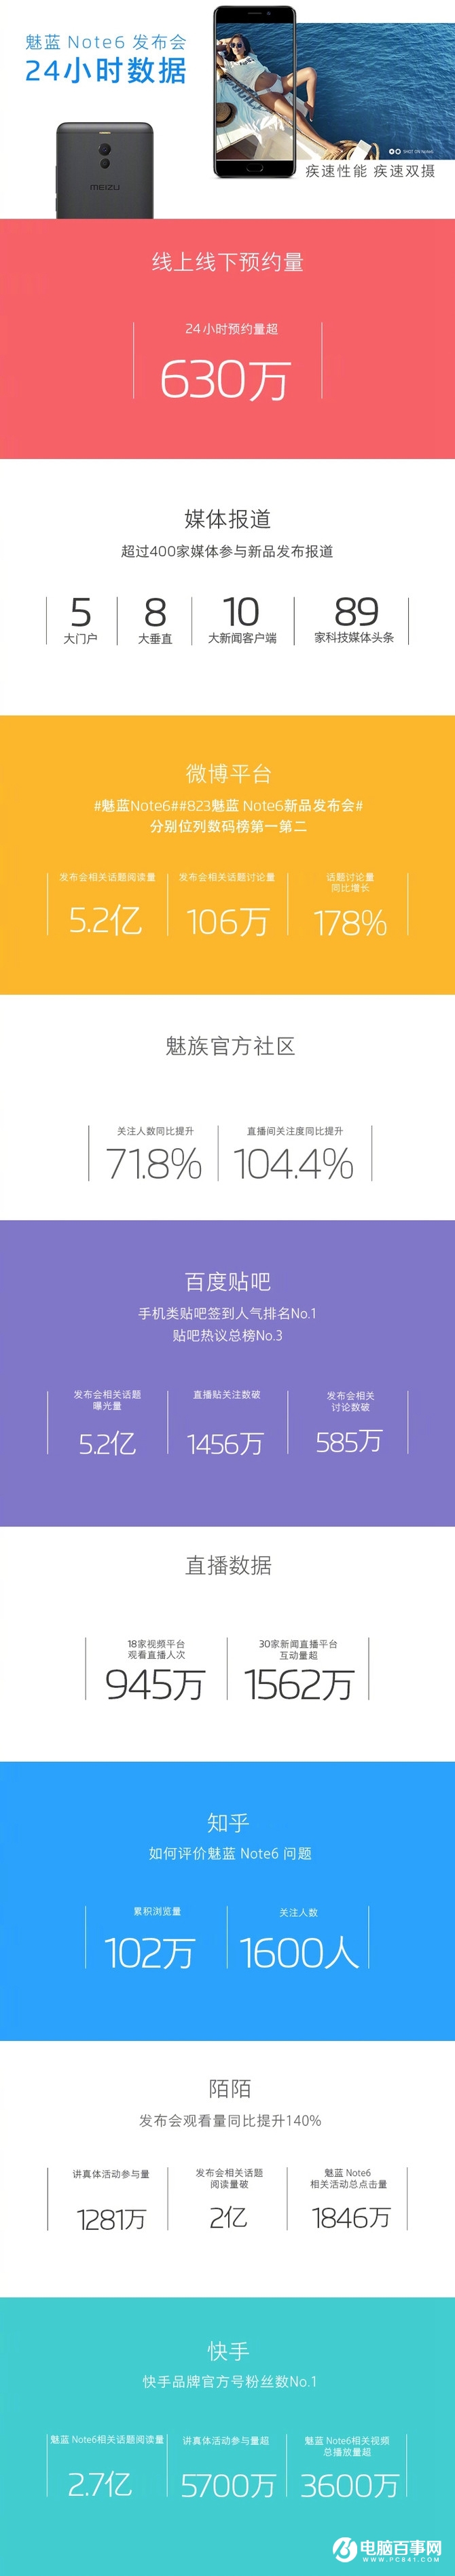 魅蓝Note6未开卖先火 24小时预约量达630万